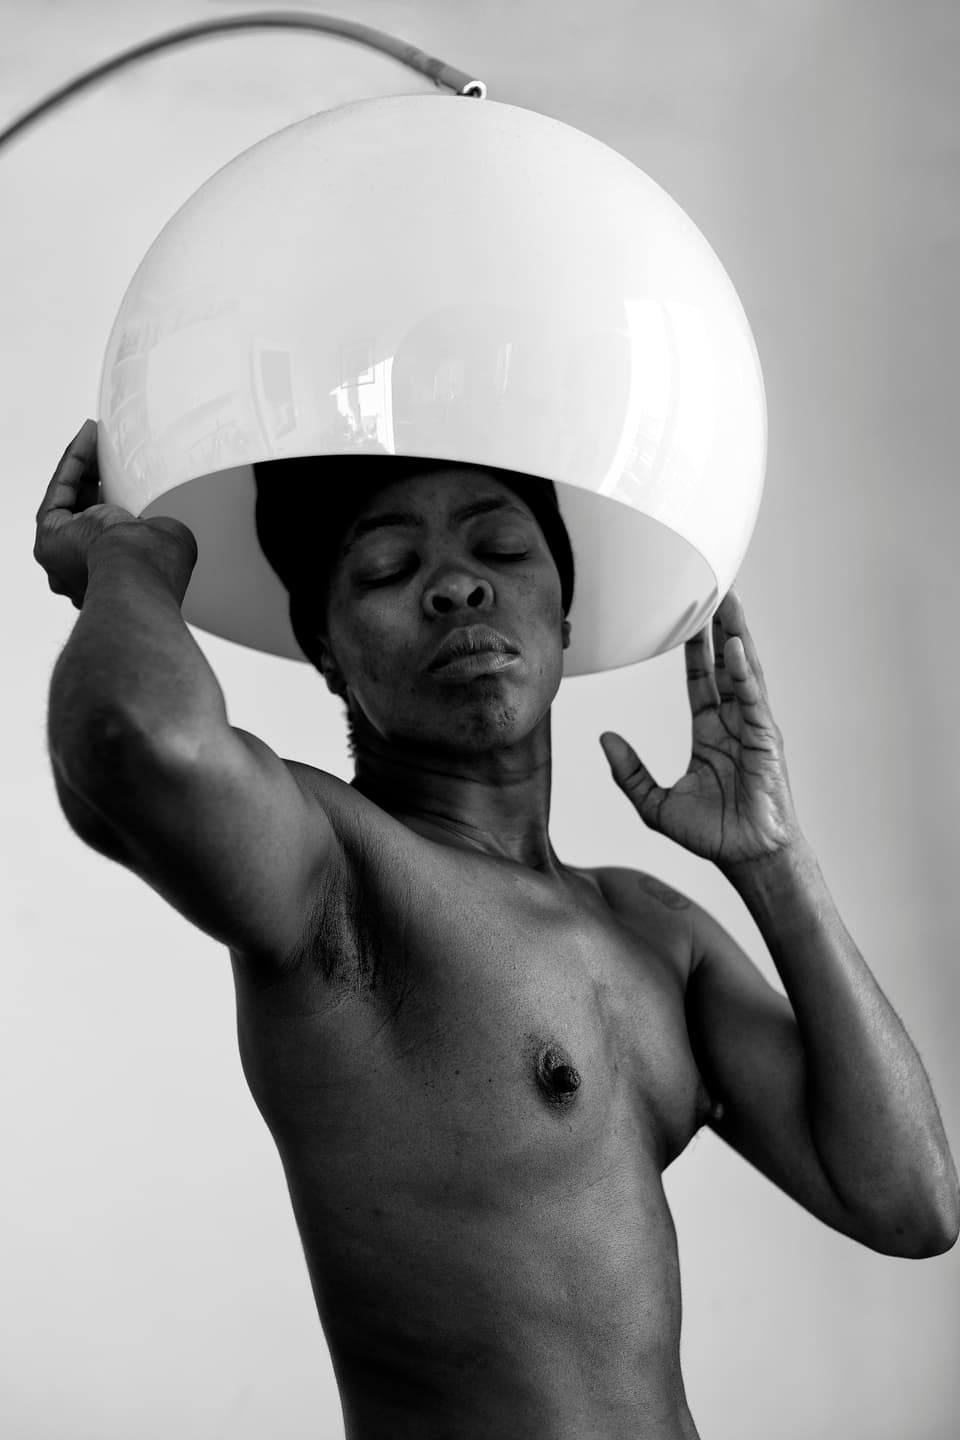 Schwarz-Weiss-Porträt einer oberkörperfreien schwarzen Person unter einem Lampenschirm